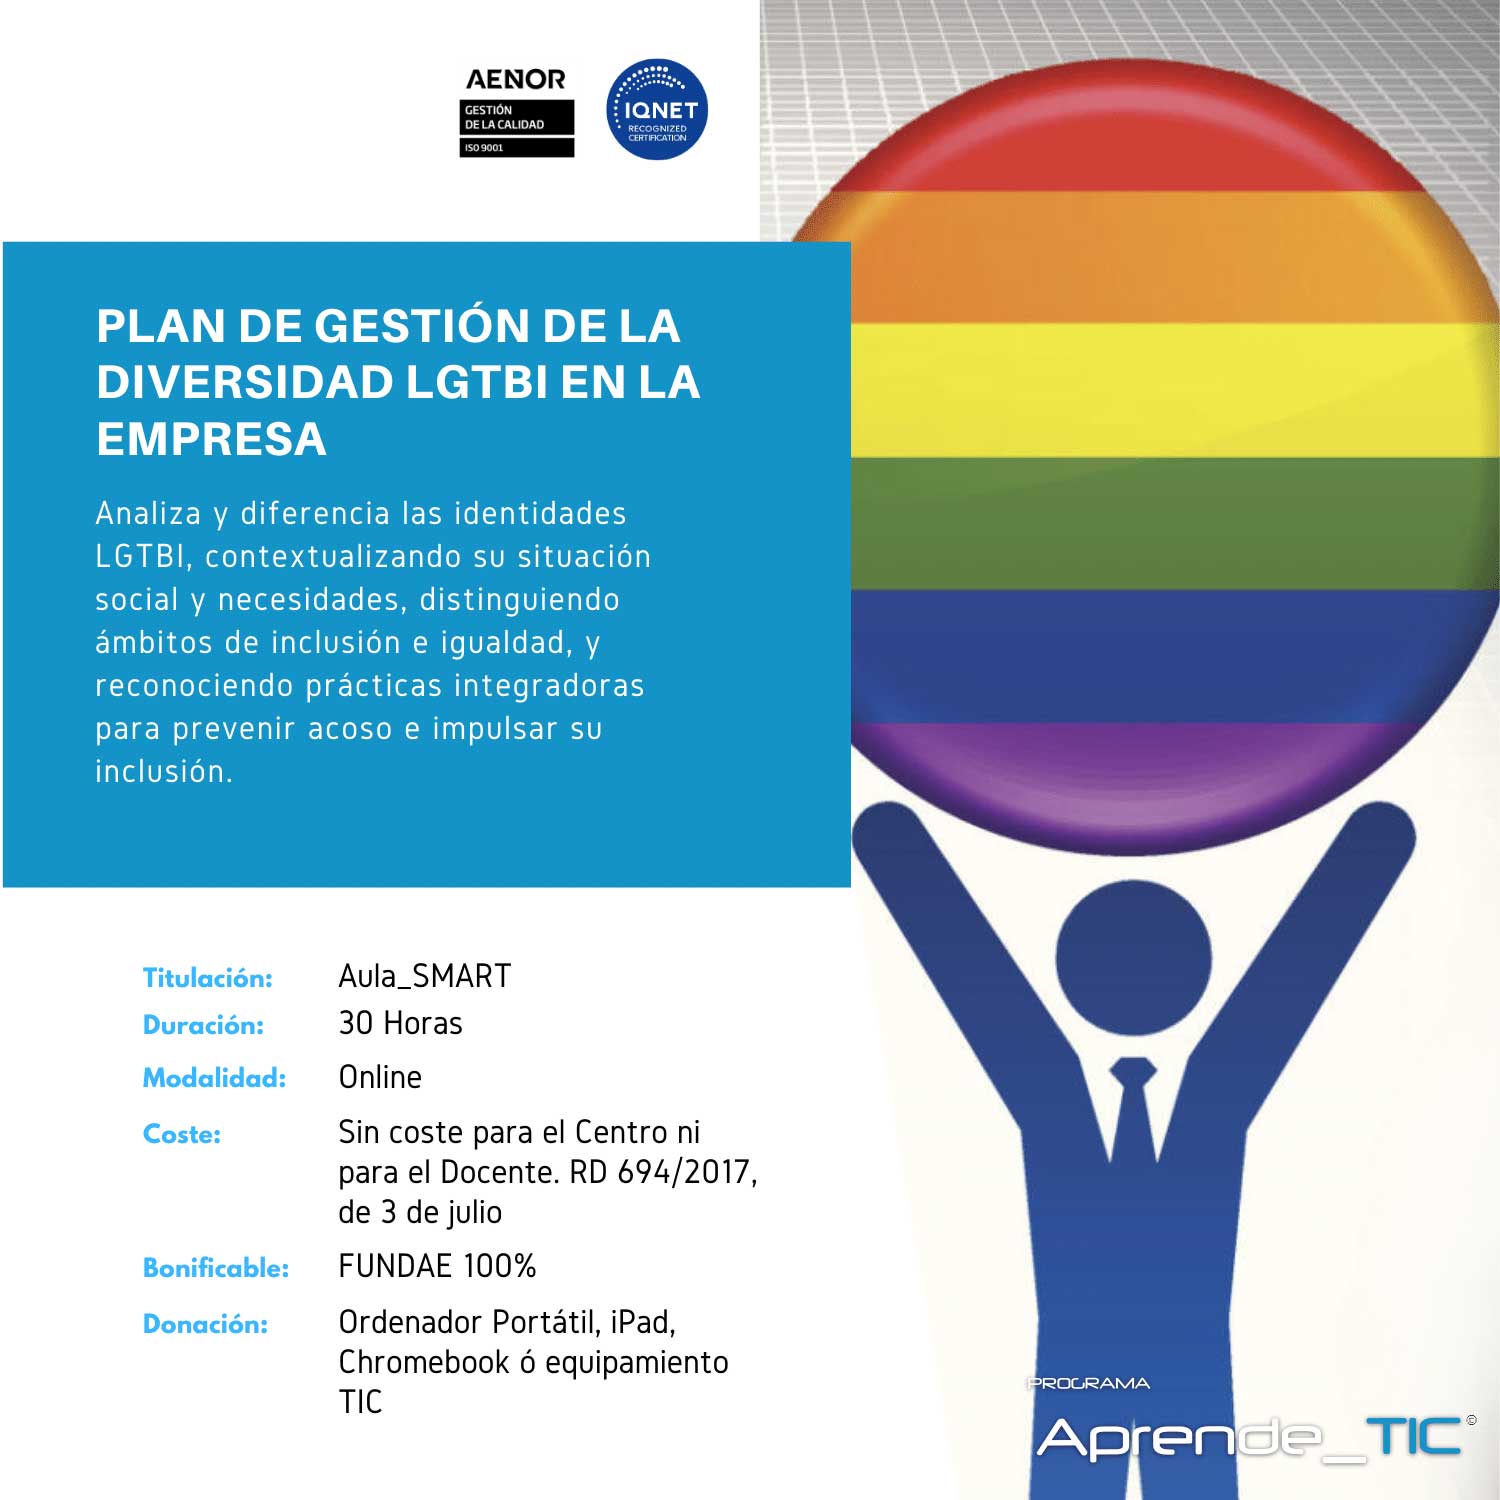 Plan de Gestión de la Diversidad LGTBI en la Empresa